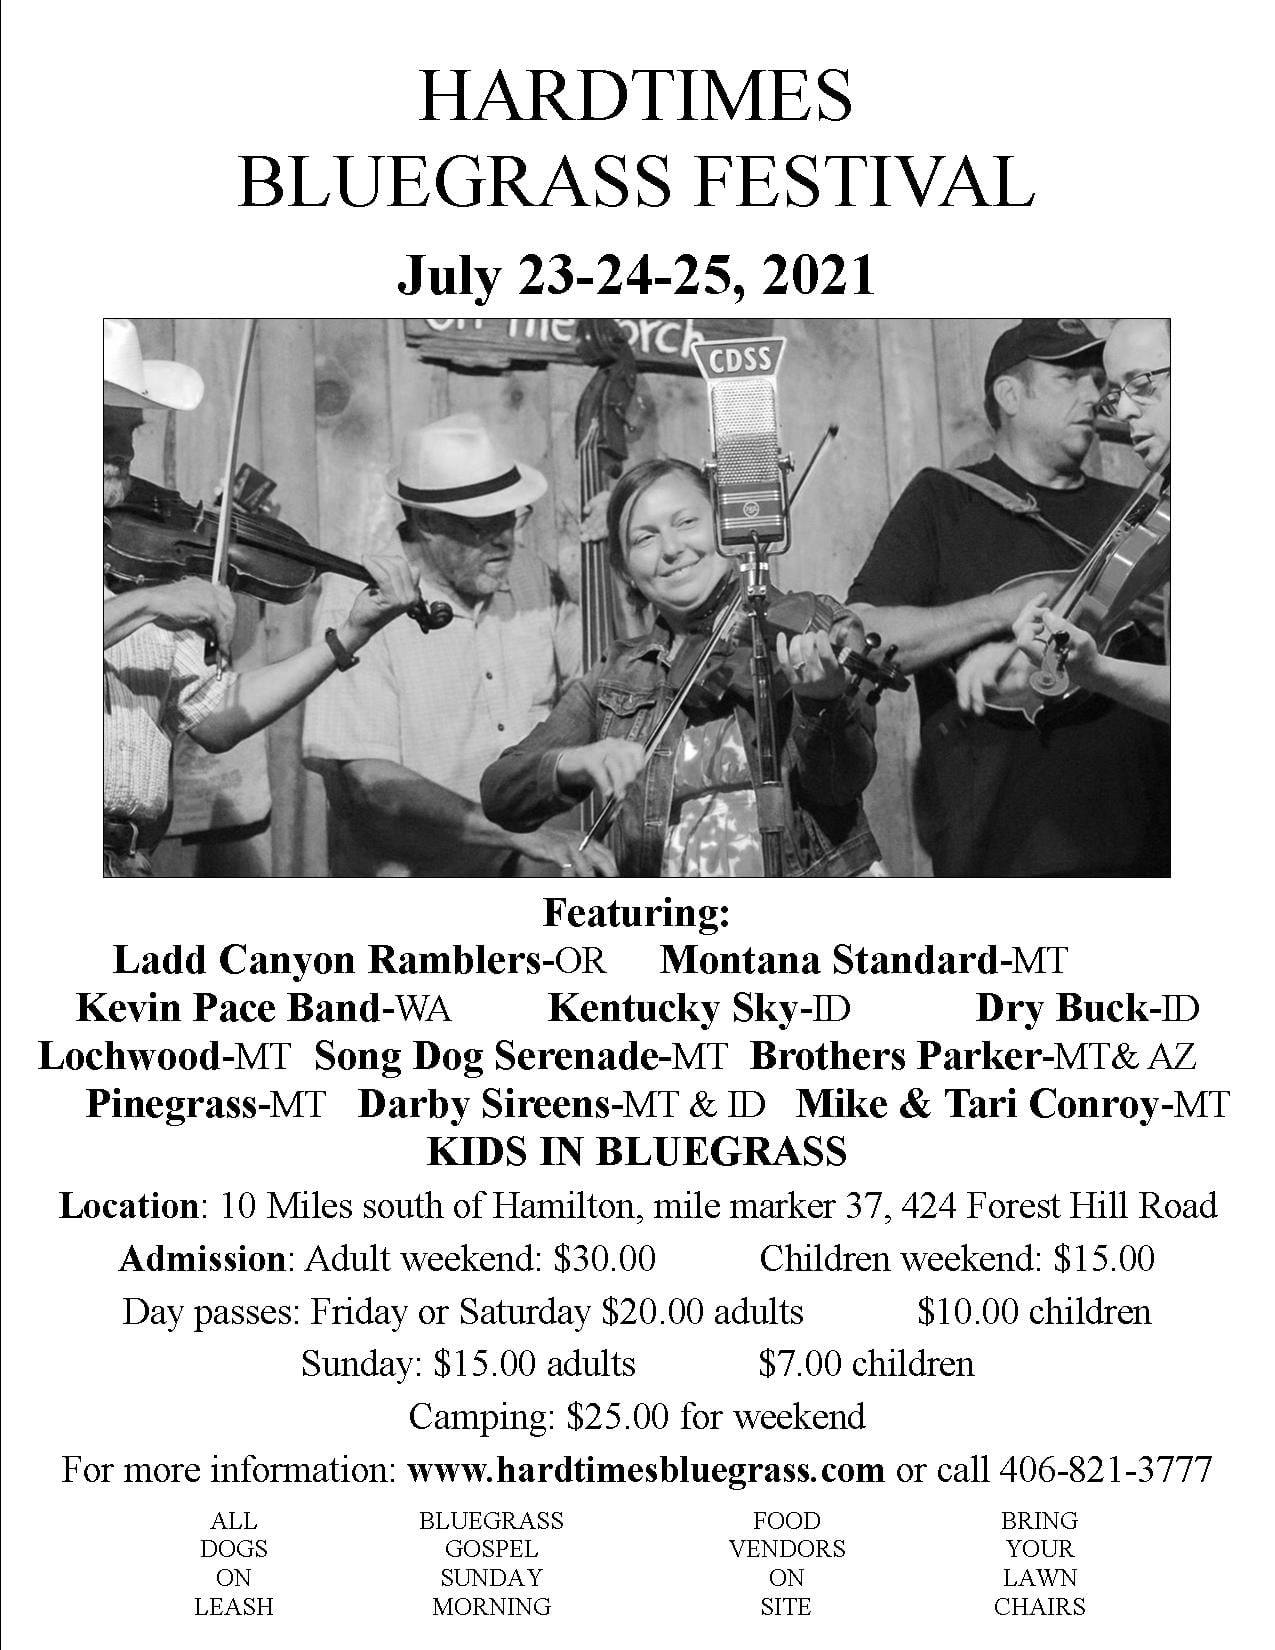 Hardtimes Bluegrass Festival